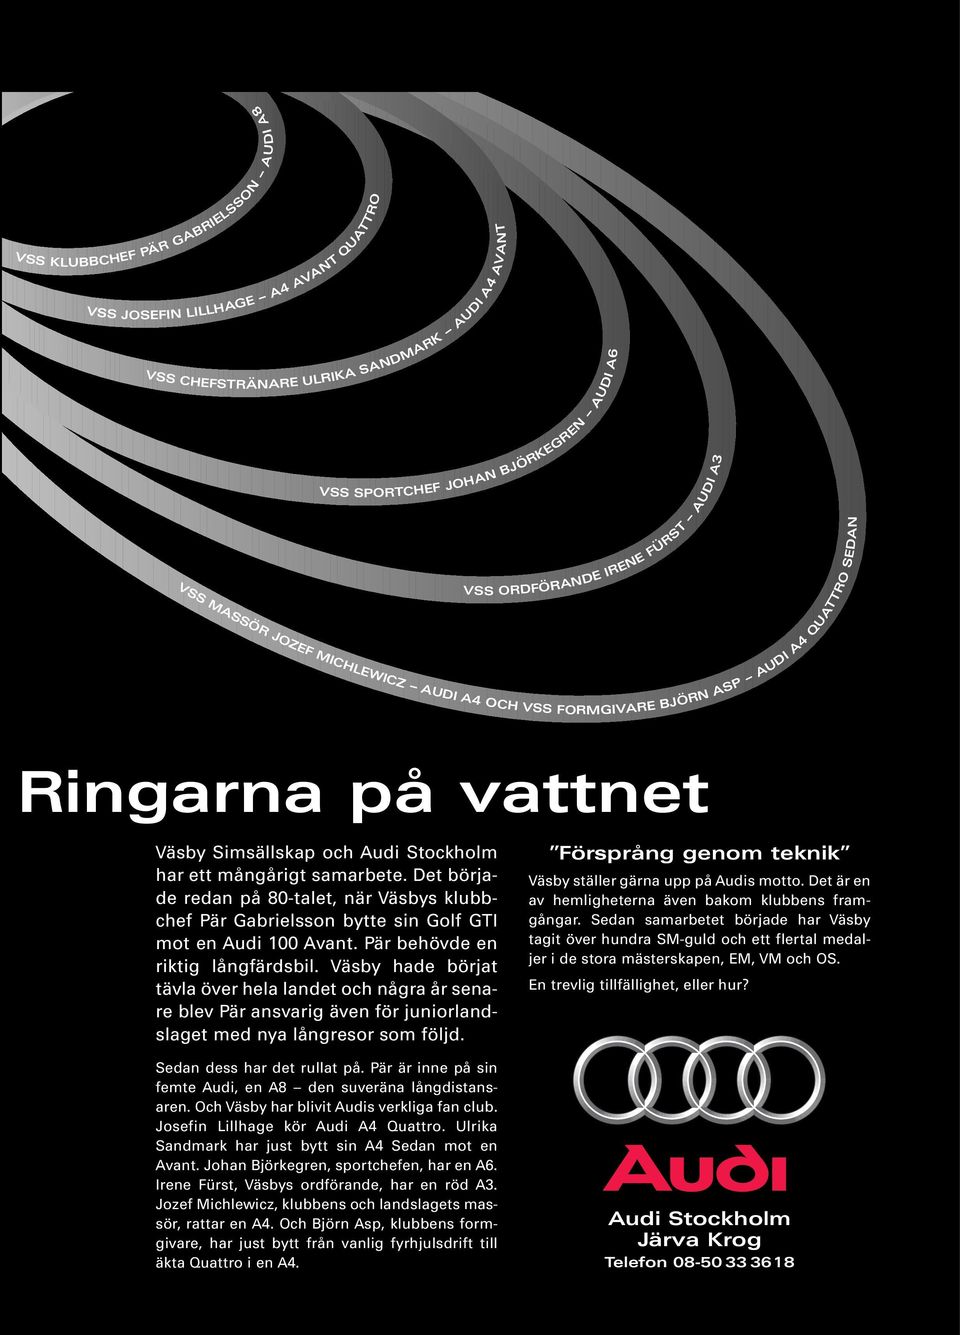 Det började redan på 80-talet, när Väsbys klubbchef Pär Gabrielsson bytte sin Golf GTI mot en Audi 100 Avant. Pär behövde en riktig långfärdsbil.